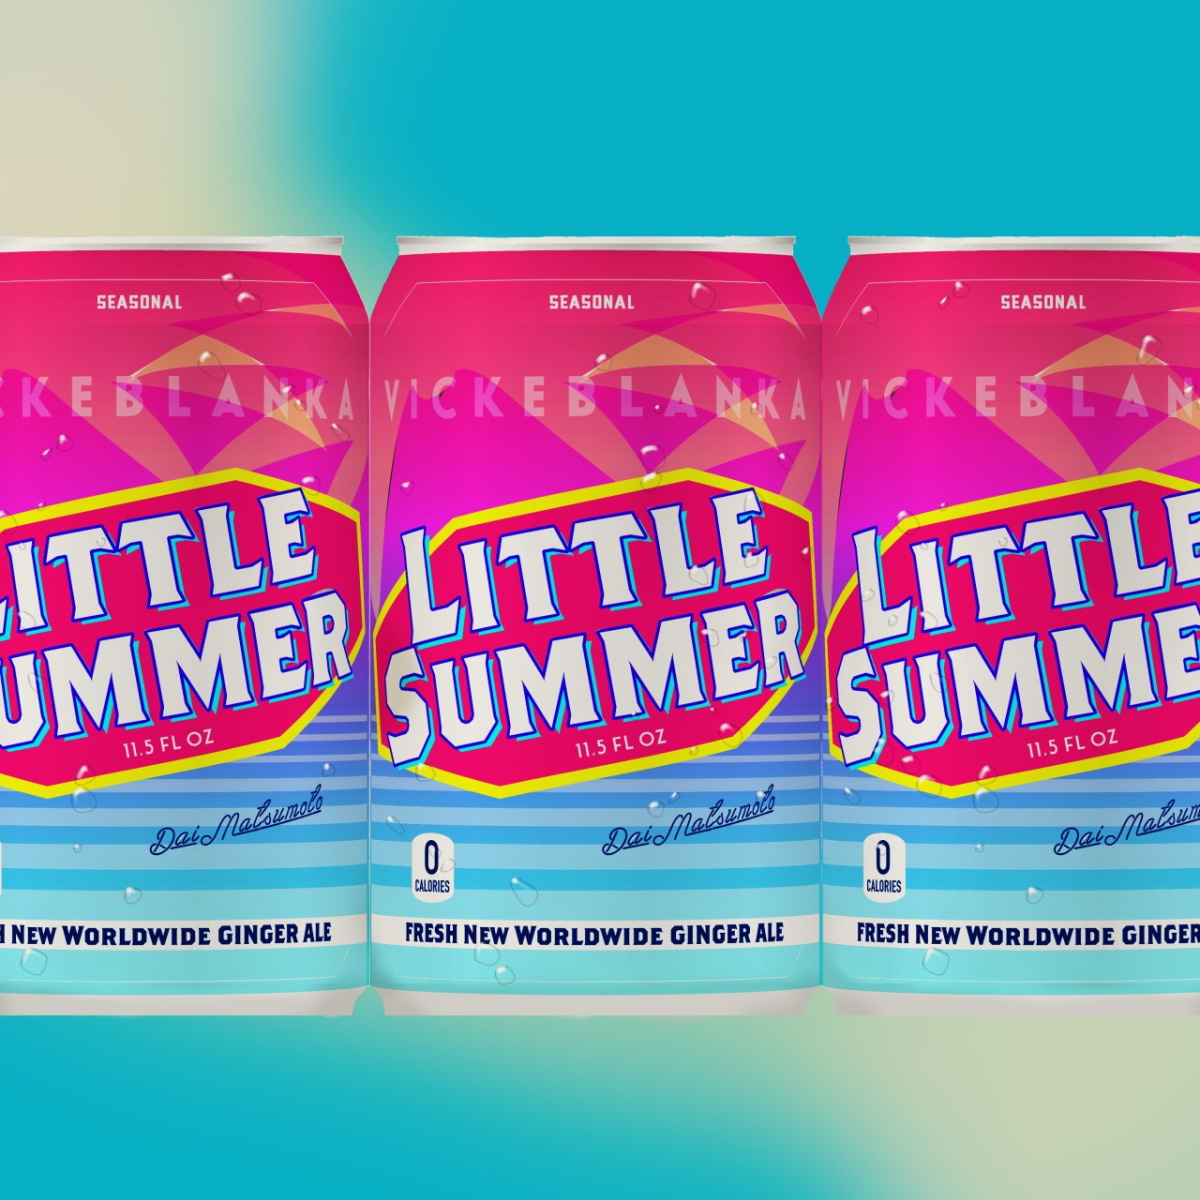 『ビッケブランカ & 松本大 - Little Summer 歌詞』収録の『Little Summer』ジャケット